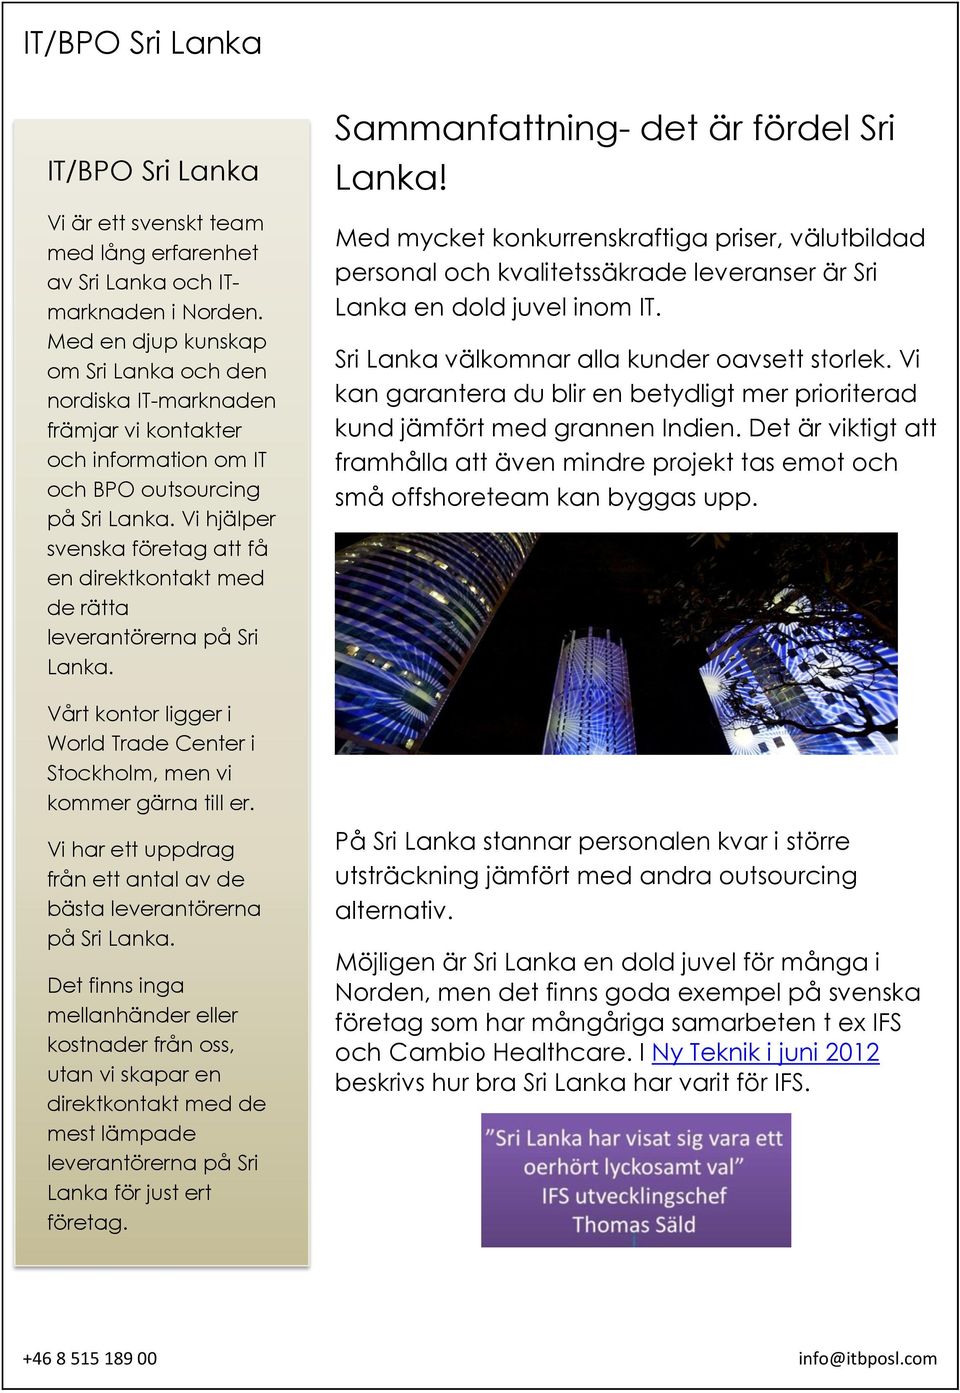 Vi hjälper svenska företag att få en direktkontakt med de rätta leverantörerna på Sri Lanka. Vårt kontor ligger i World Trade Center i Stockholm, men vi kommer gärna till er.